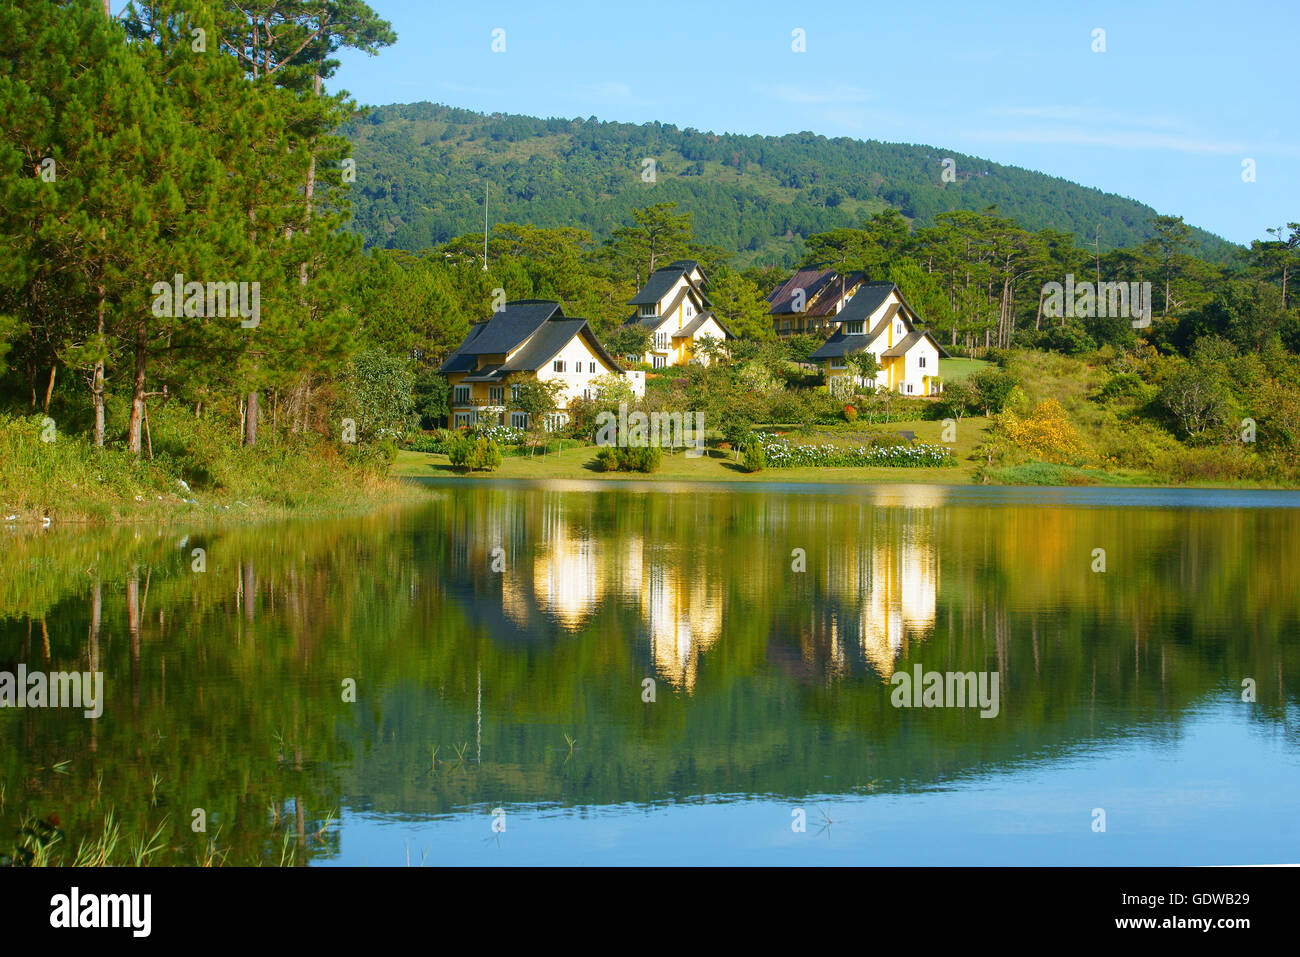 Beau paysage à Dalat village, groupe de villas reflètent sur le lac, maison de vacances eco resort entre forêt de pins verts Banque D'Images